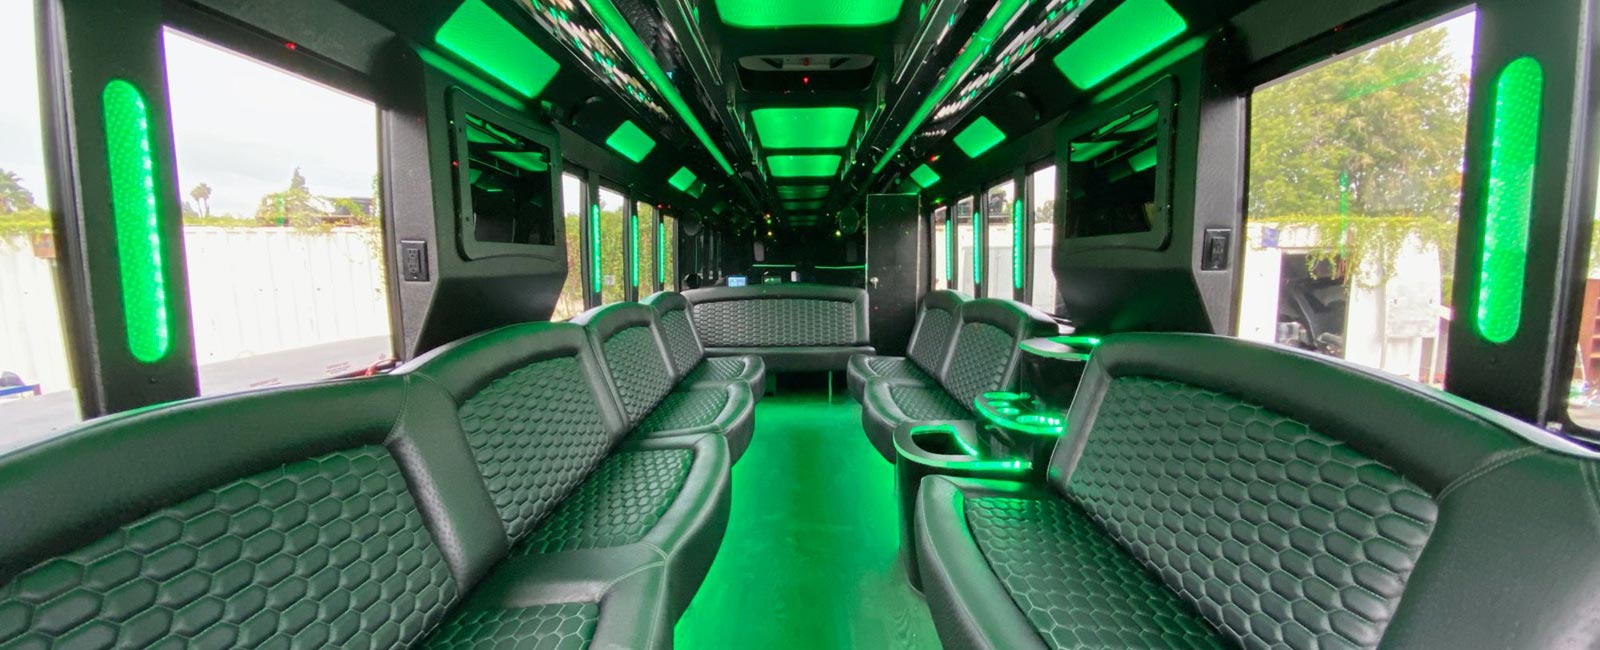 40 Person Party Bus Conversion Interior